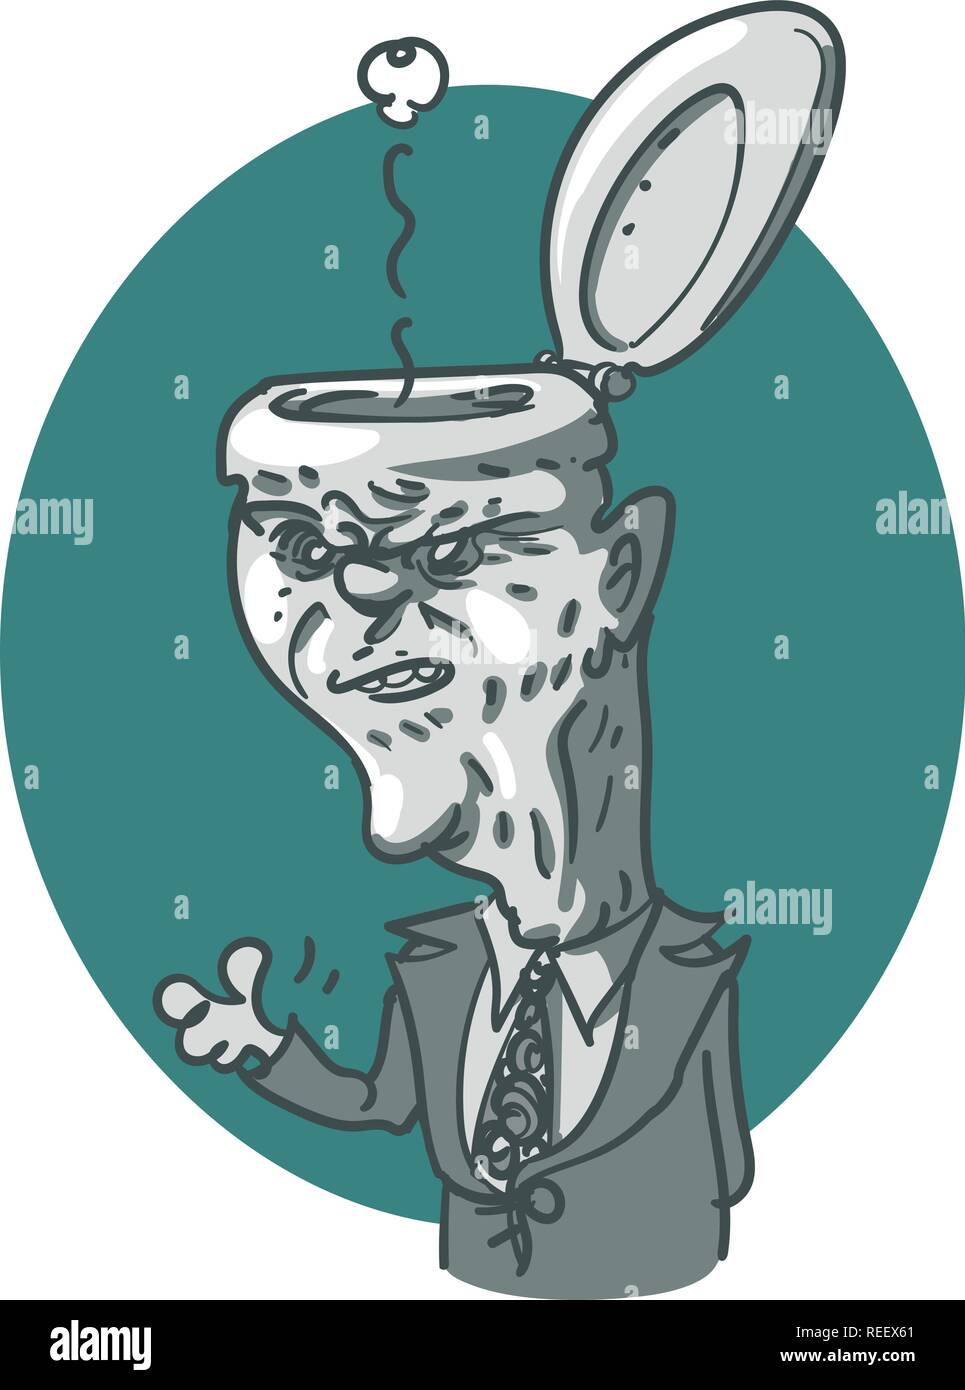 Une penderie chef politicien, caricature satirique, cartoon style vector illustration. Illustration de Vecteur